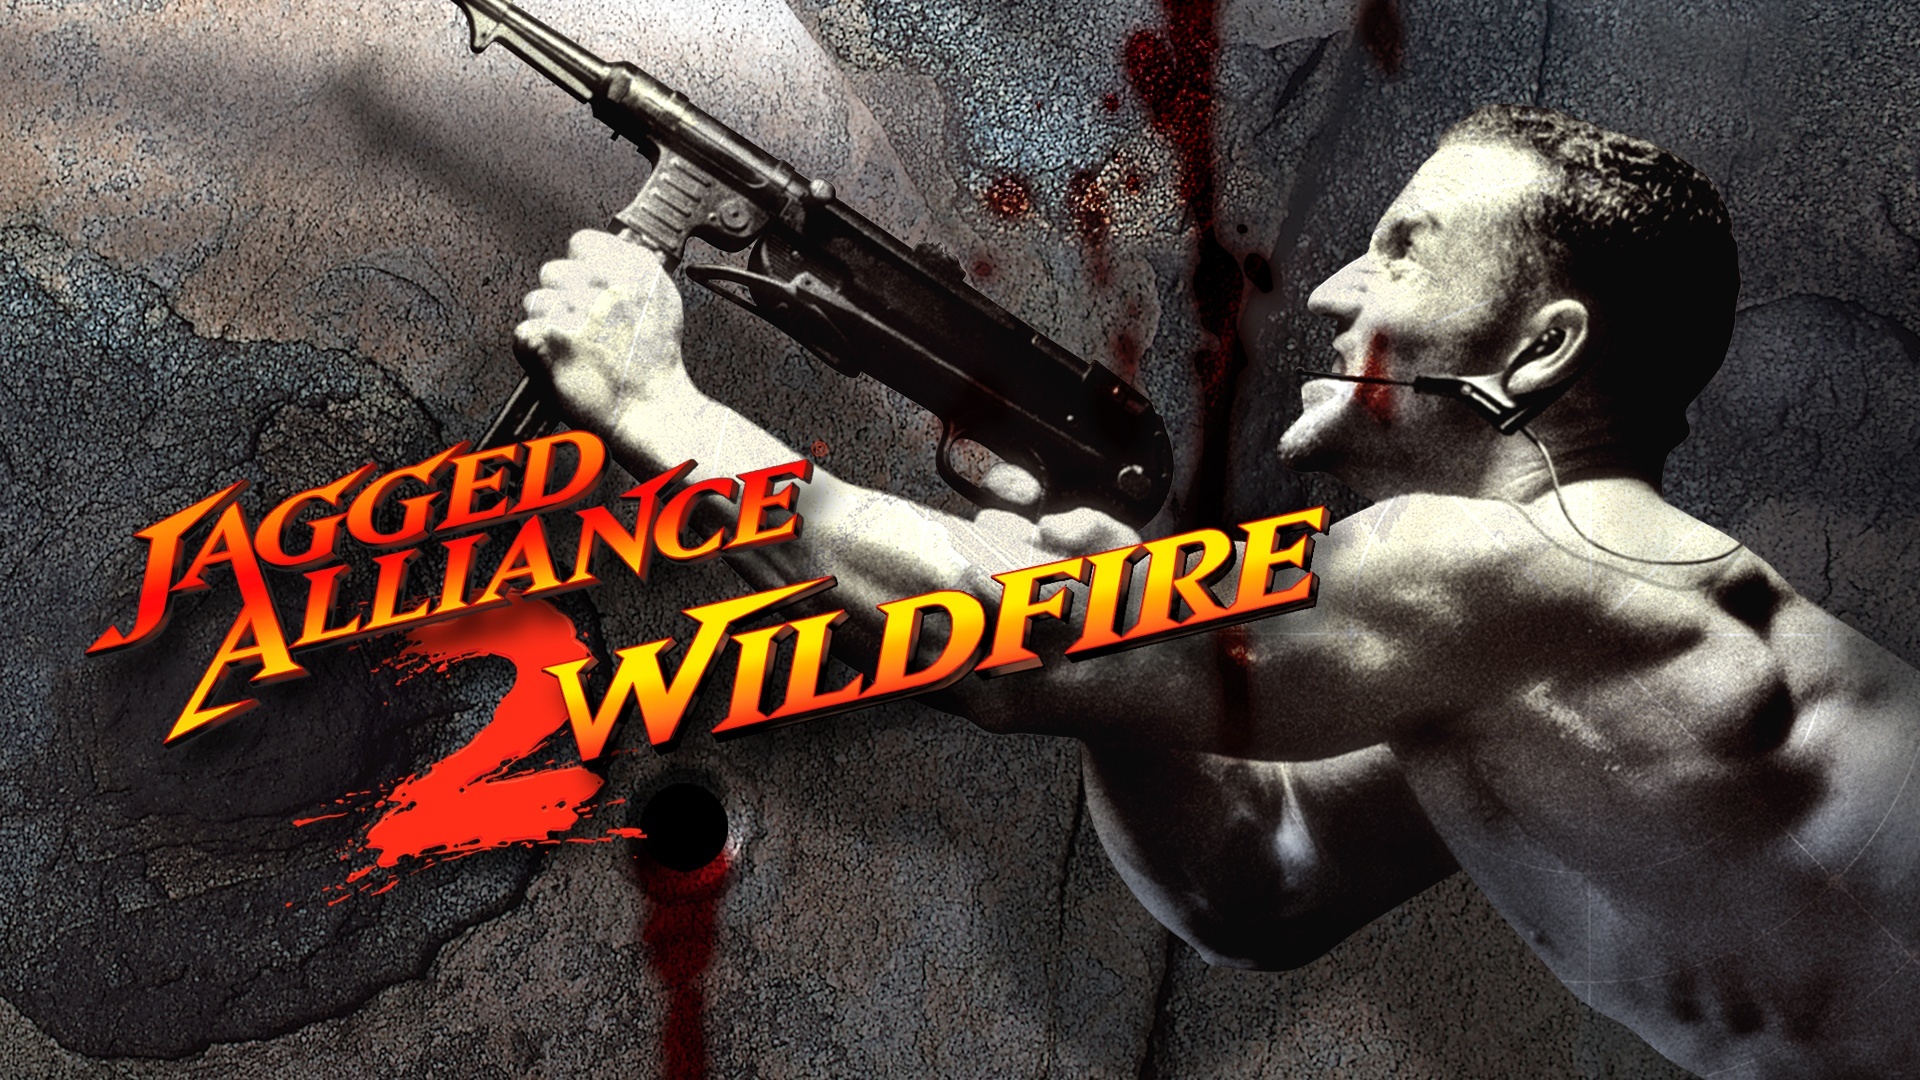 download jagged alliance 2 wildfire steam